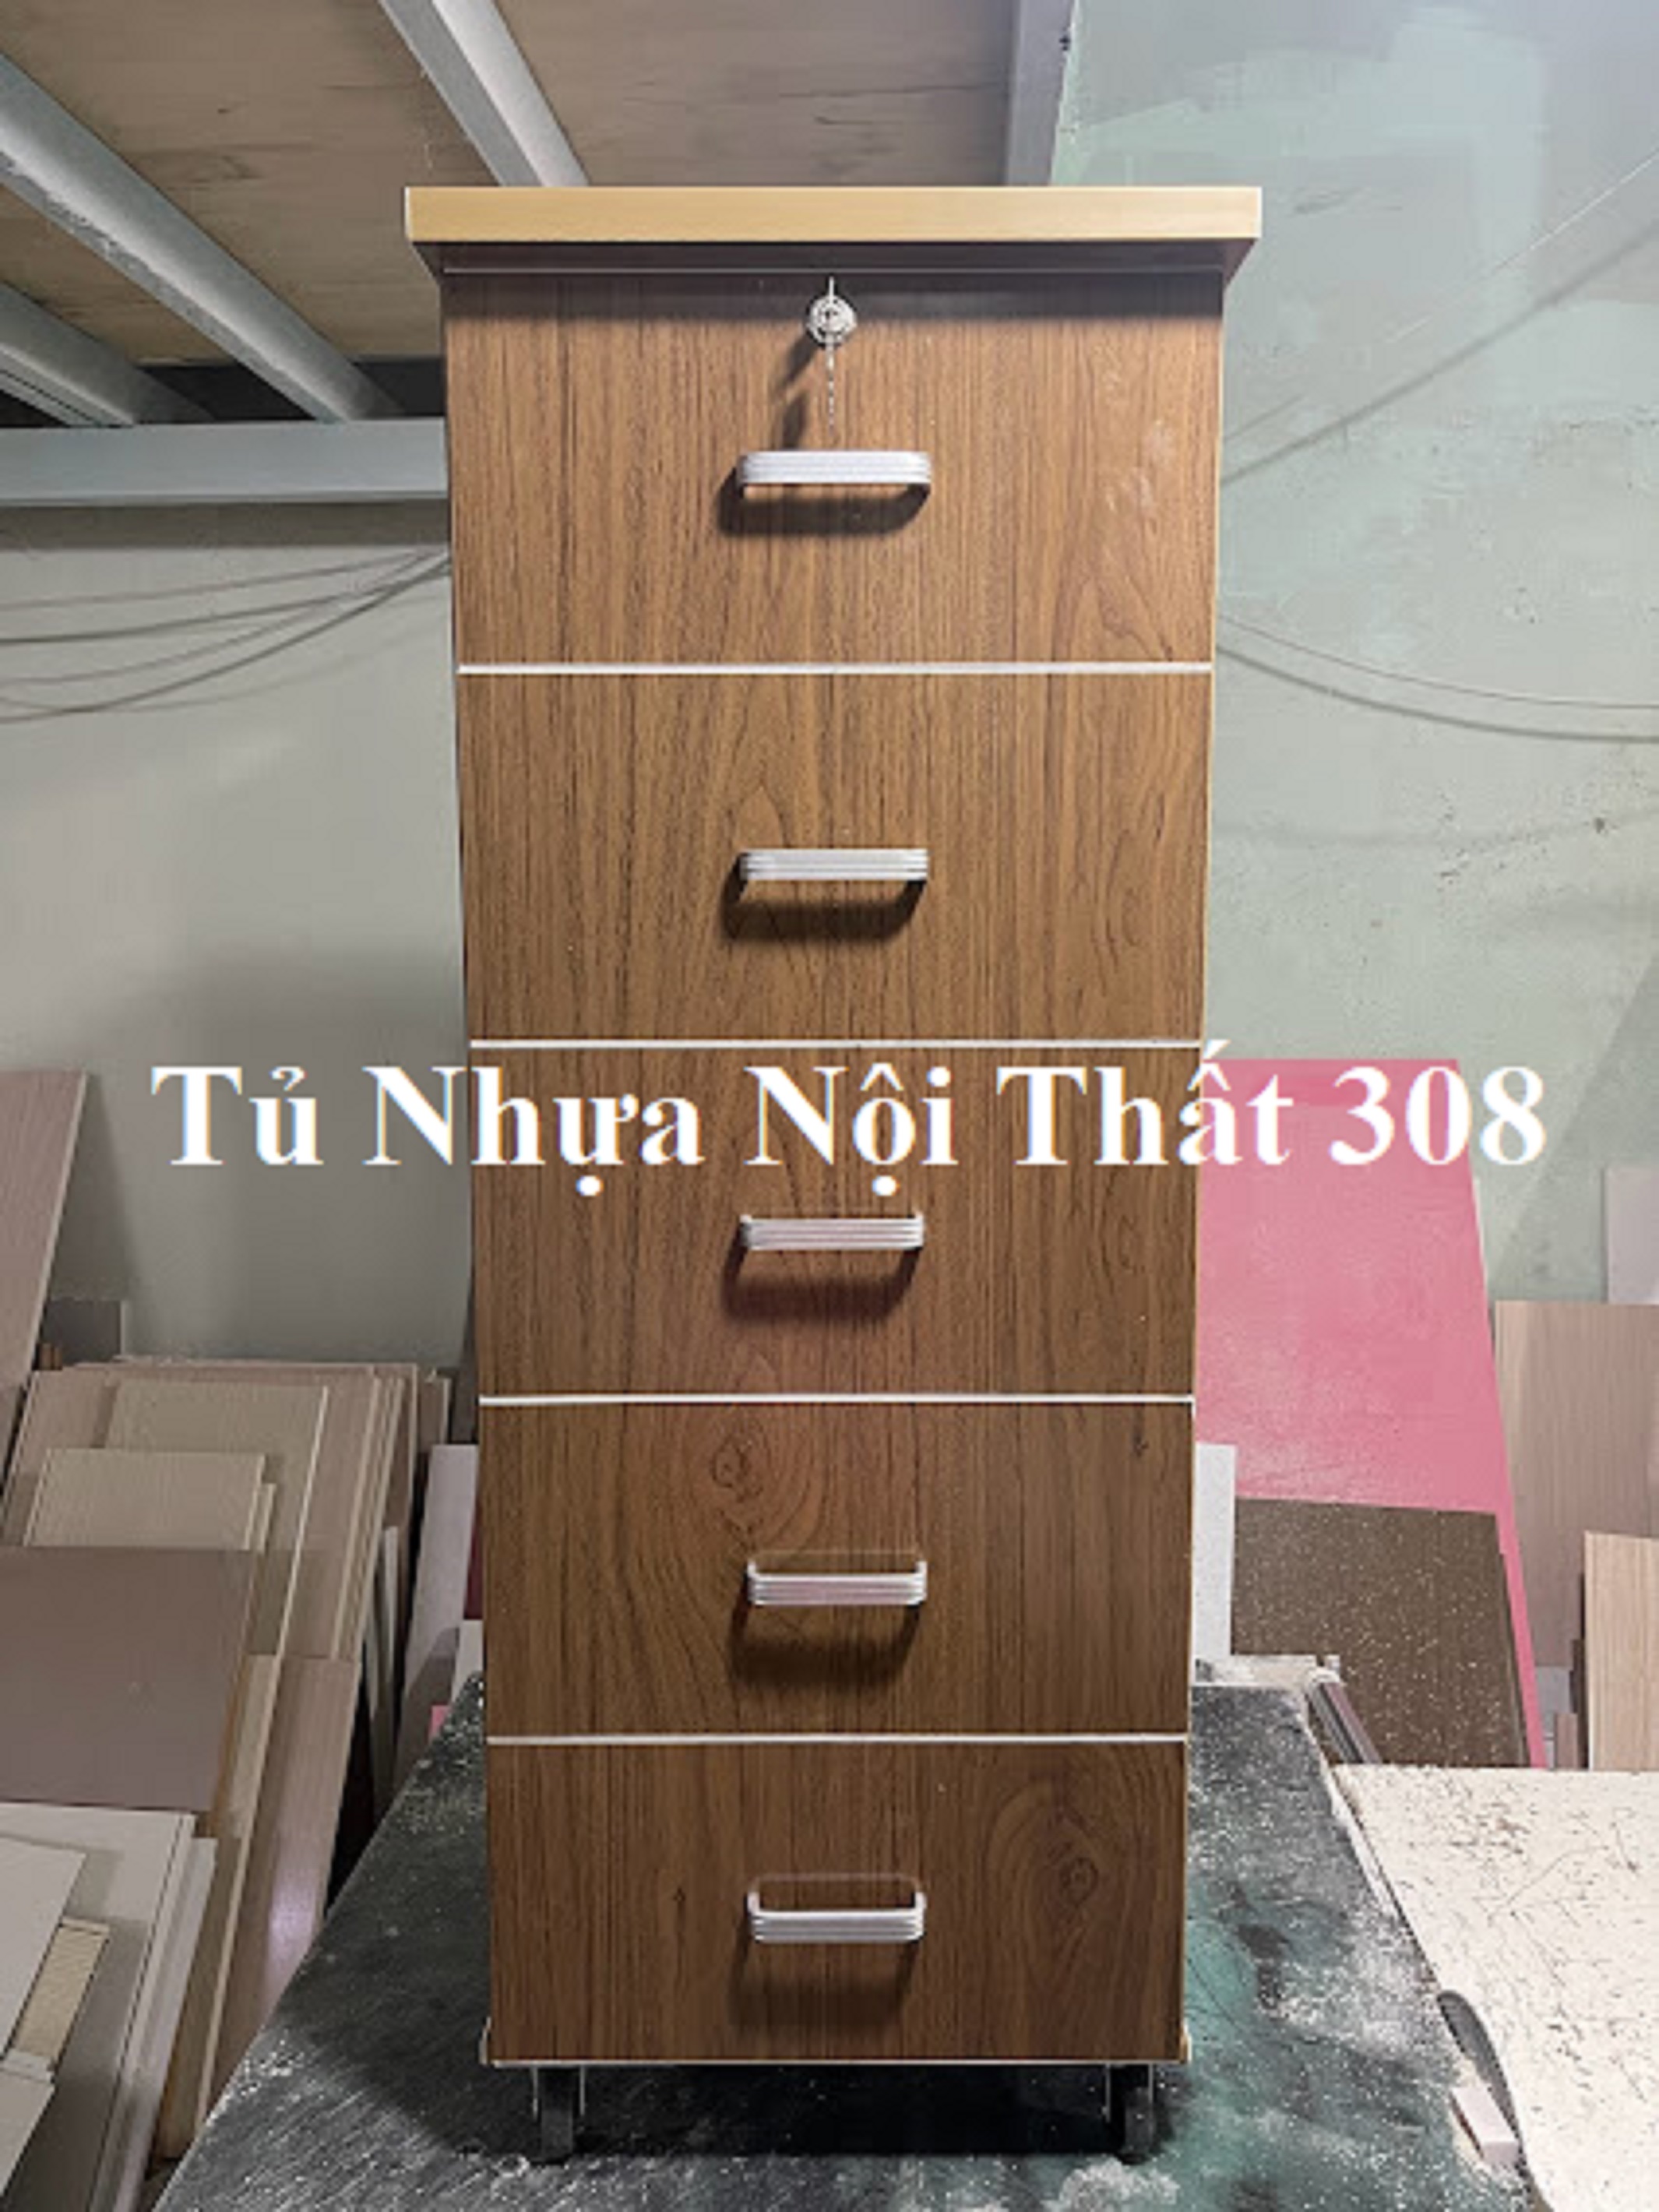 Tủ, Kệ Đầu Giường Nhựa Đài Loan Cao 109,5cm Ngang 42cm Sâu 42cm K110